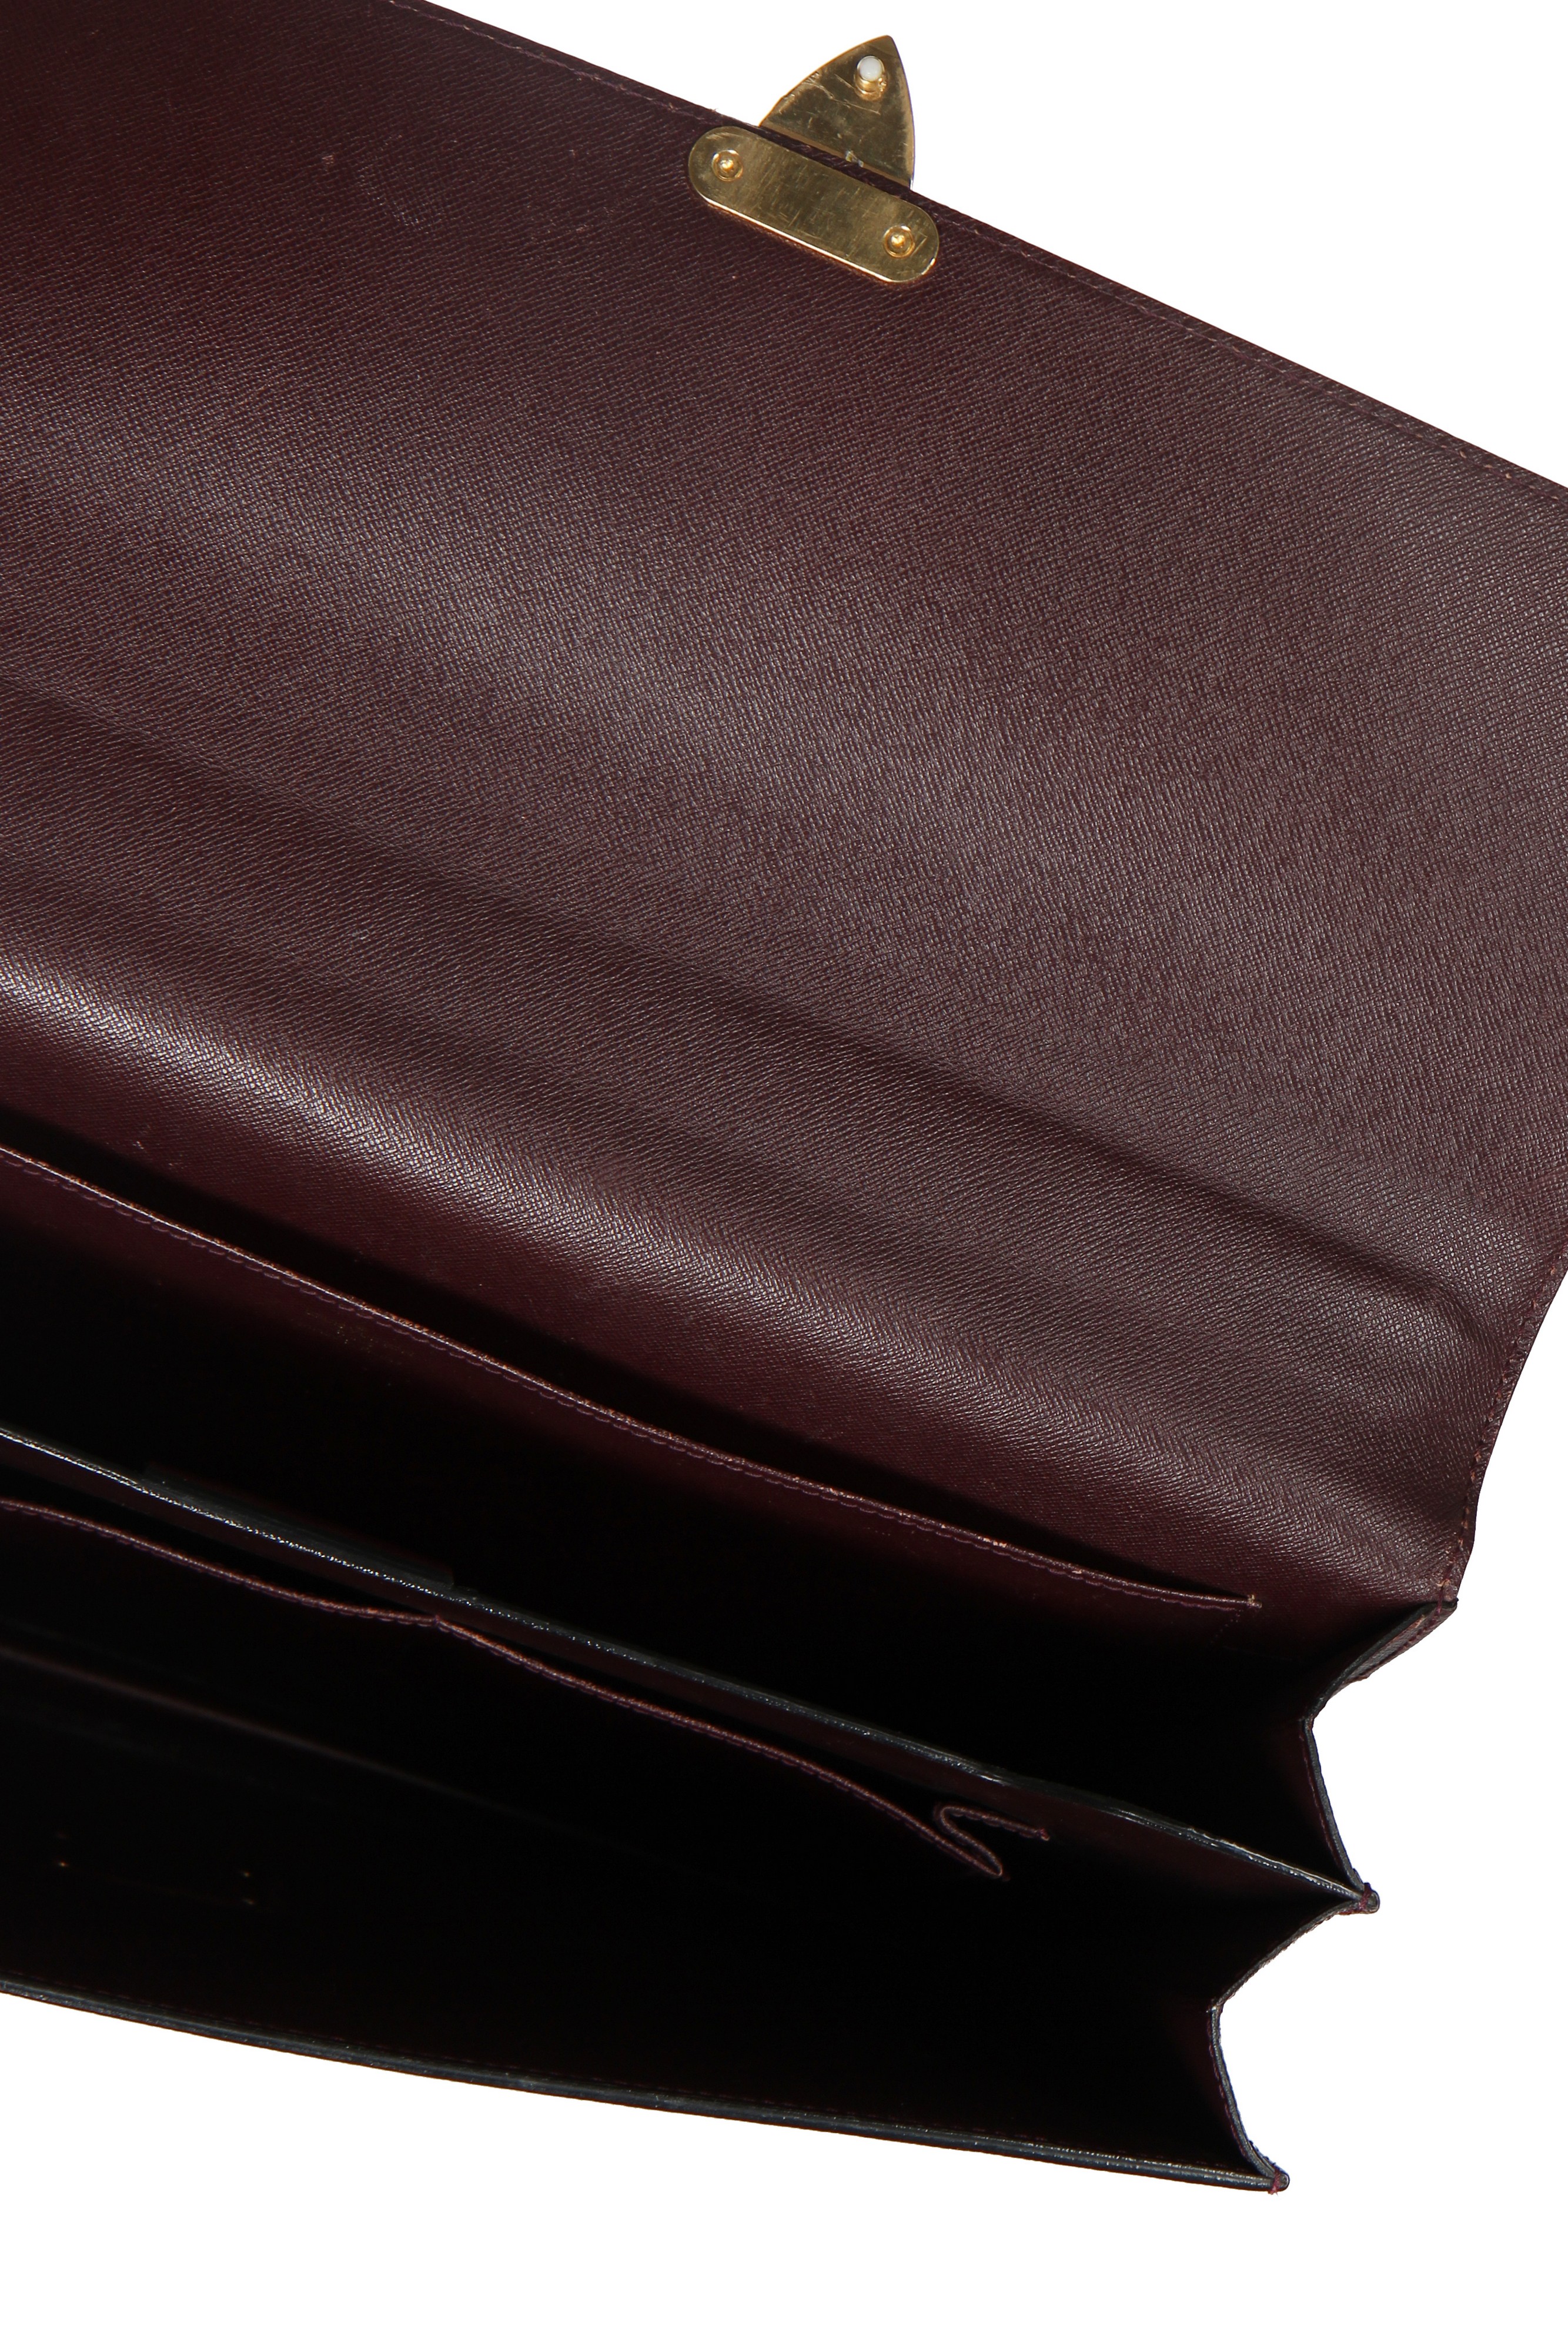 Past auction: Louis Vuitton Epi leather petit briefcase purse 1990s